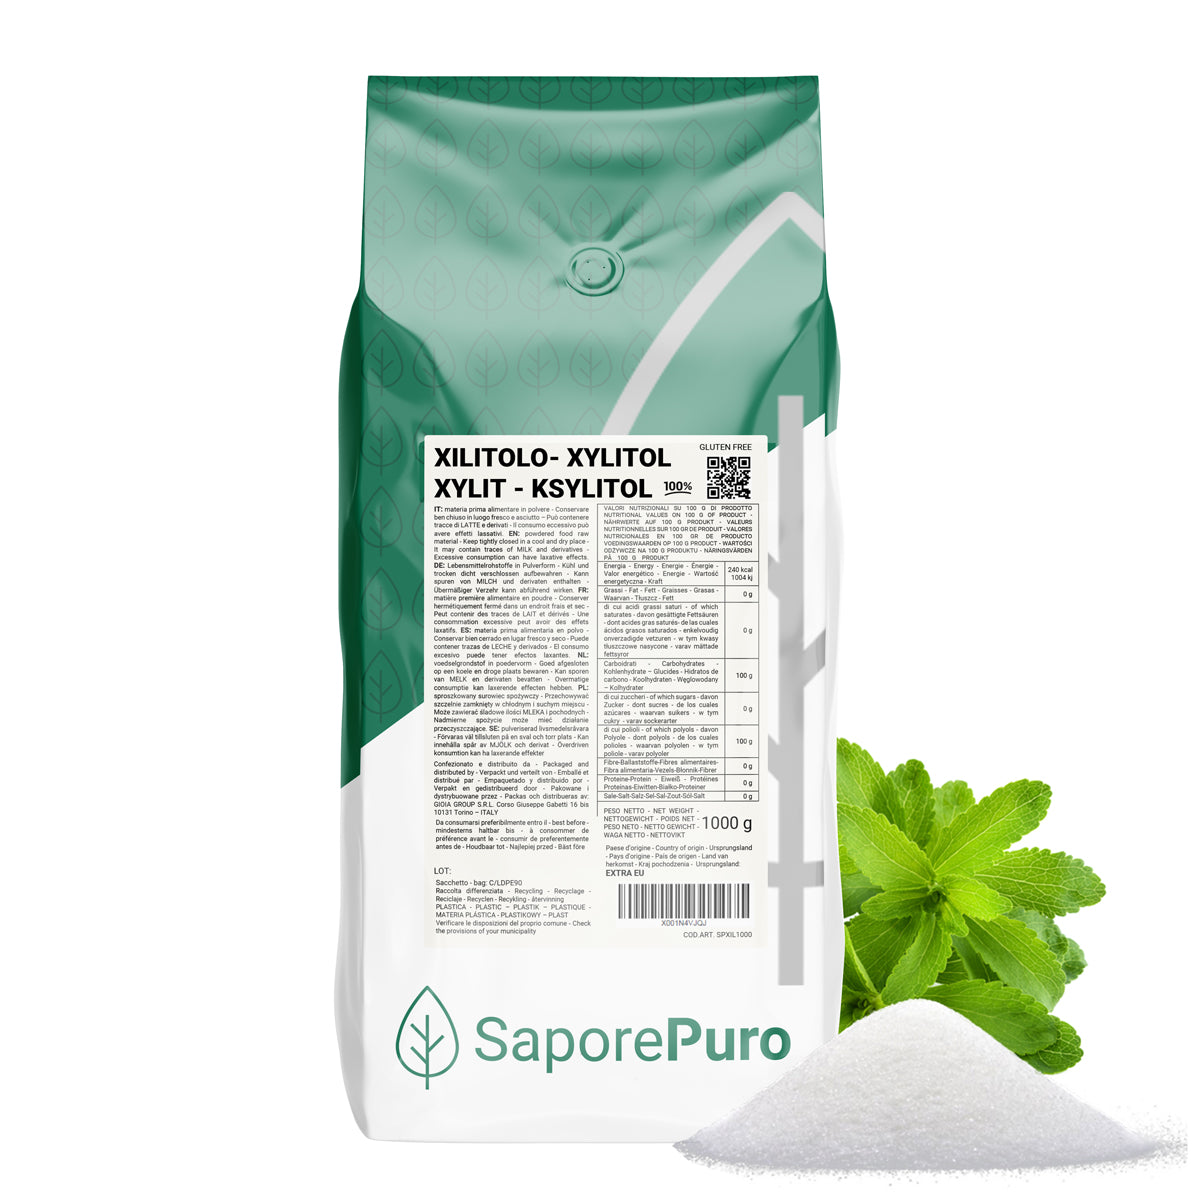 Xilitol de abedul - 1kg - Edulcorante natural con menos calorías - SaporePuro